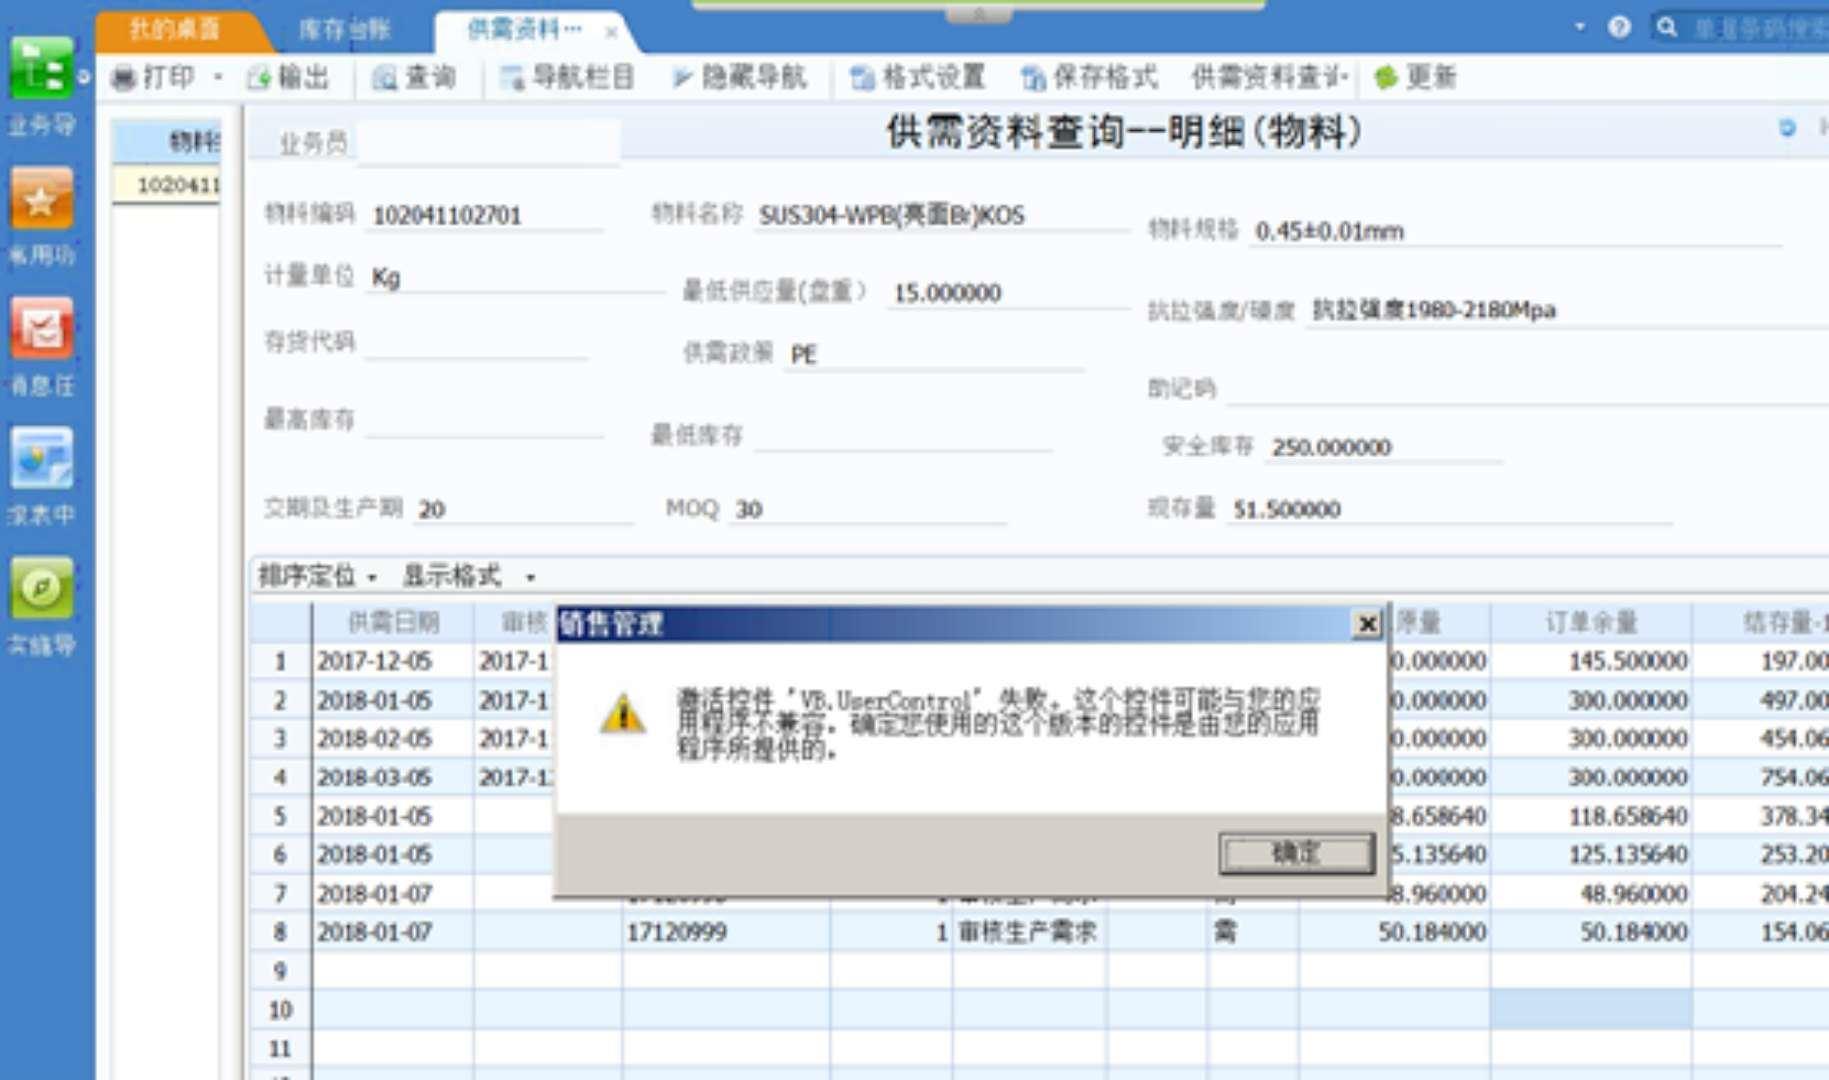 广州财政网会计软件:久其会计软件使用